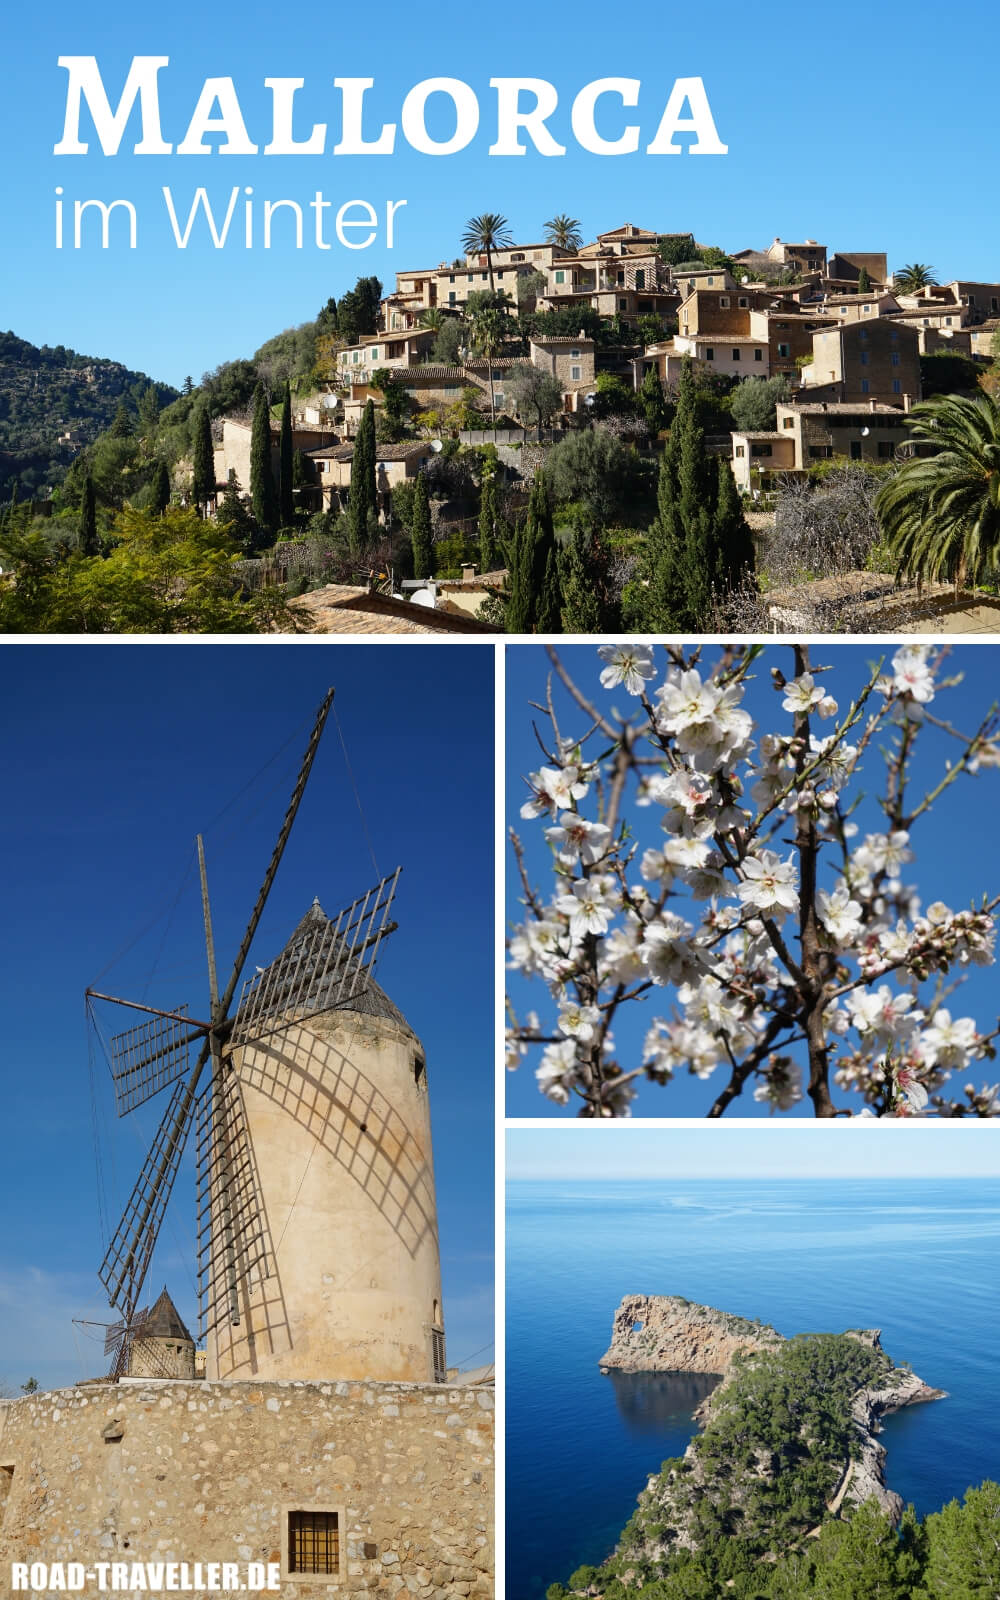 Mallorca im Winter zur Mandelbluete erleben - unsere Tipps und Highlights